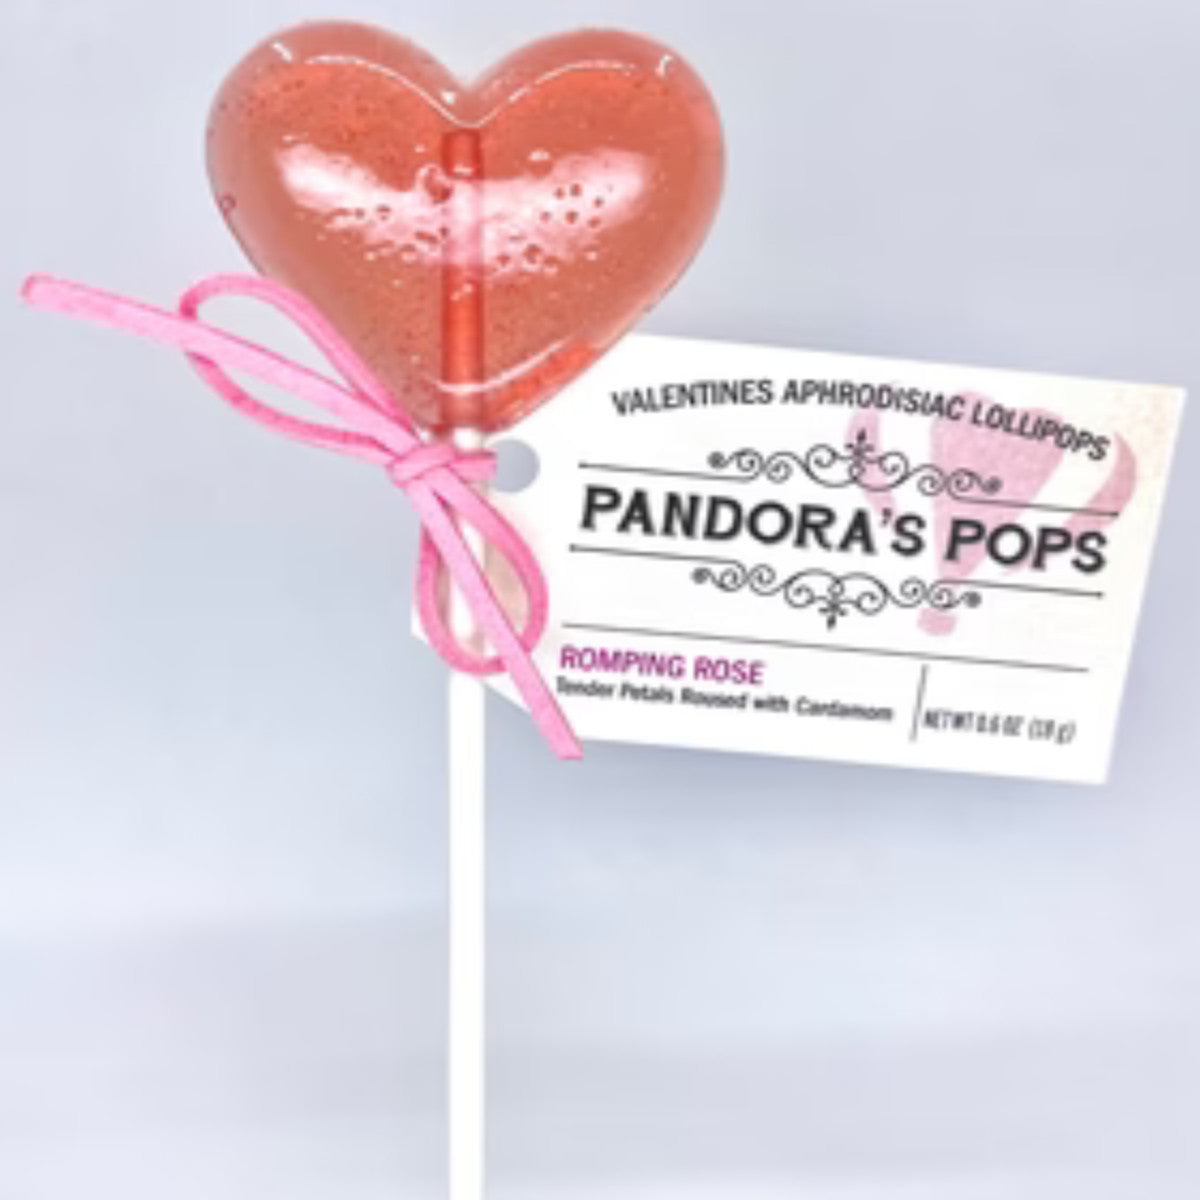 Pandora's Pops